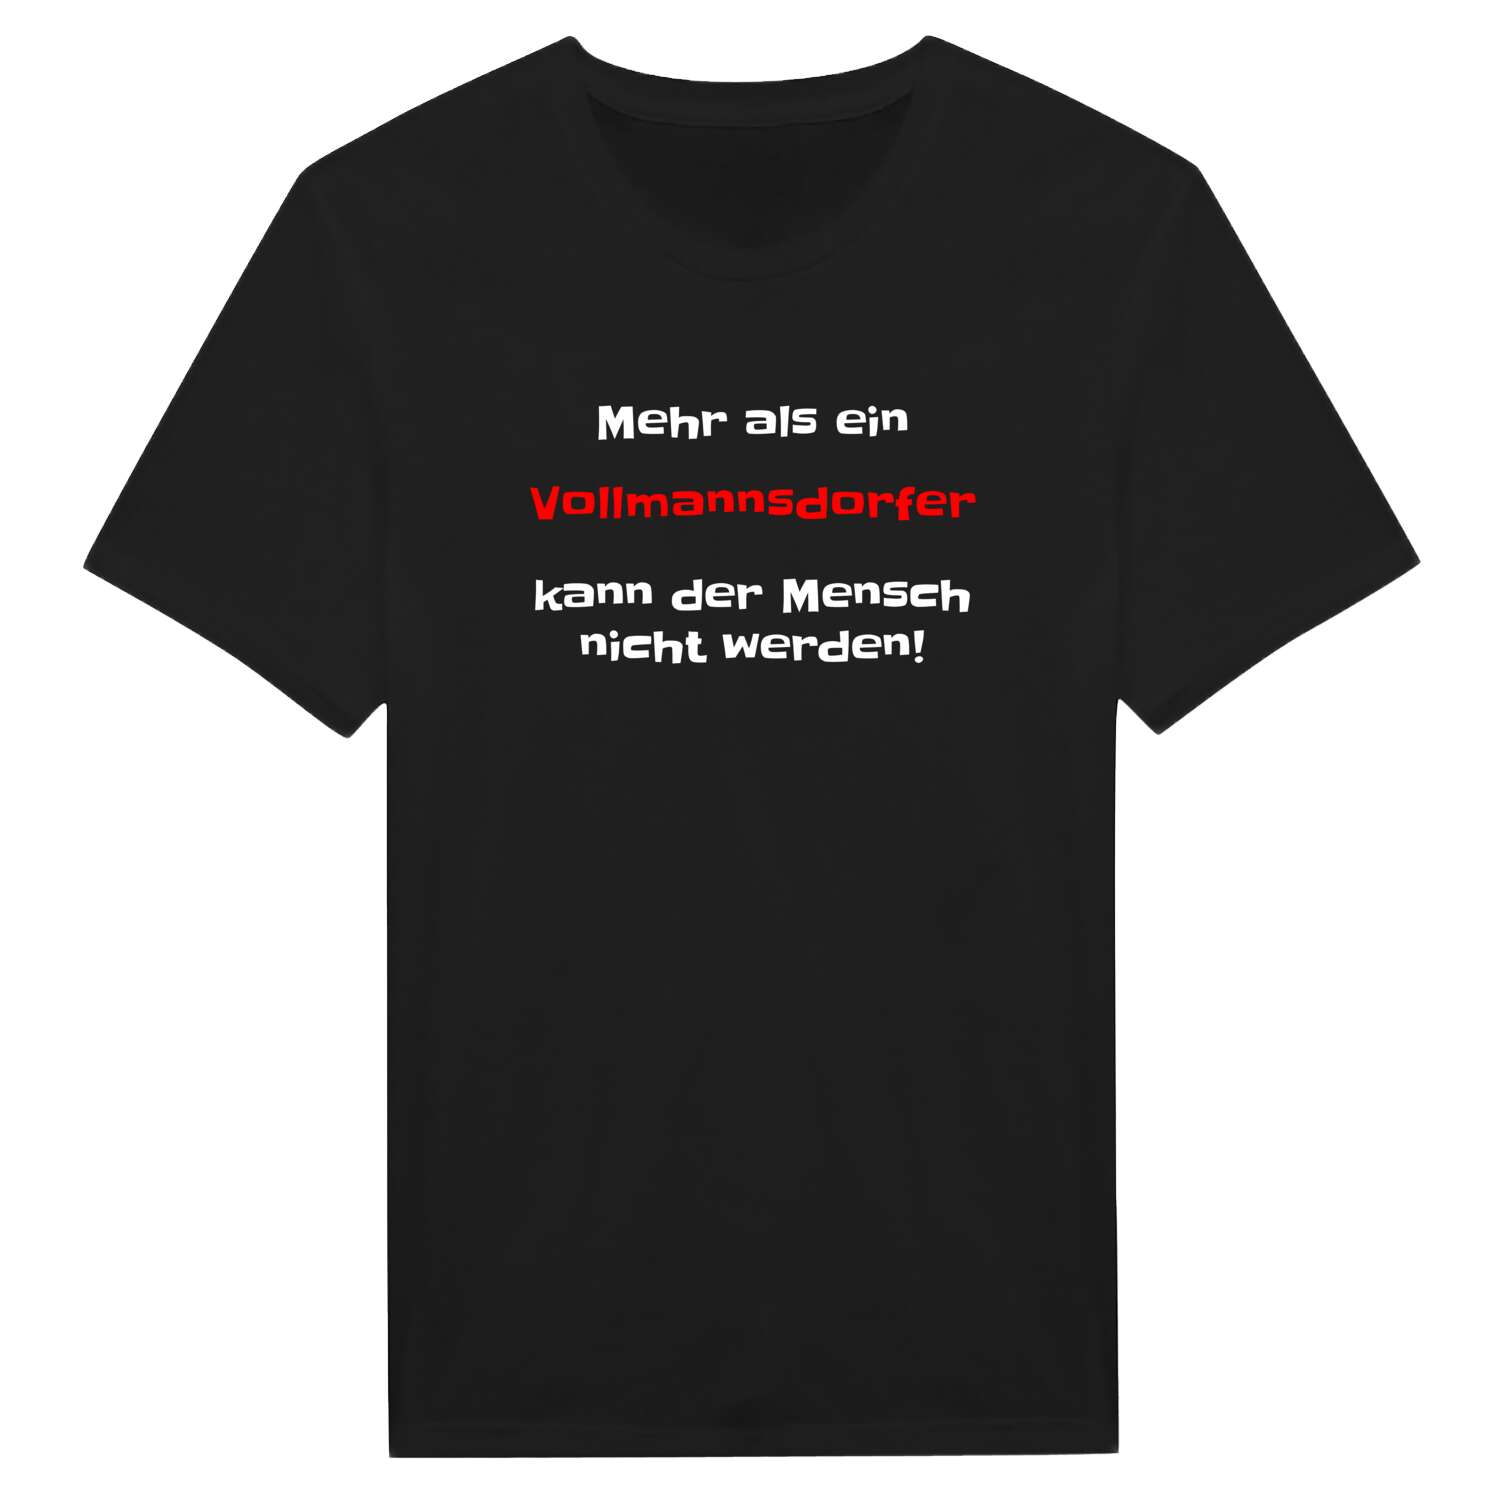 Vollmannsdorf T-Shirt »Mehr als ein«